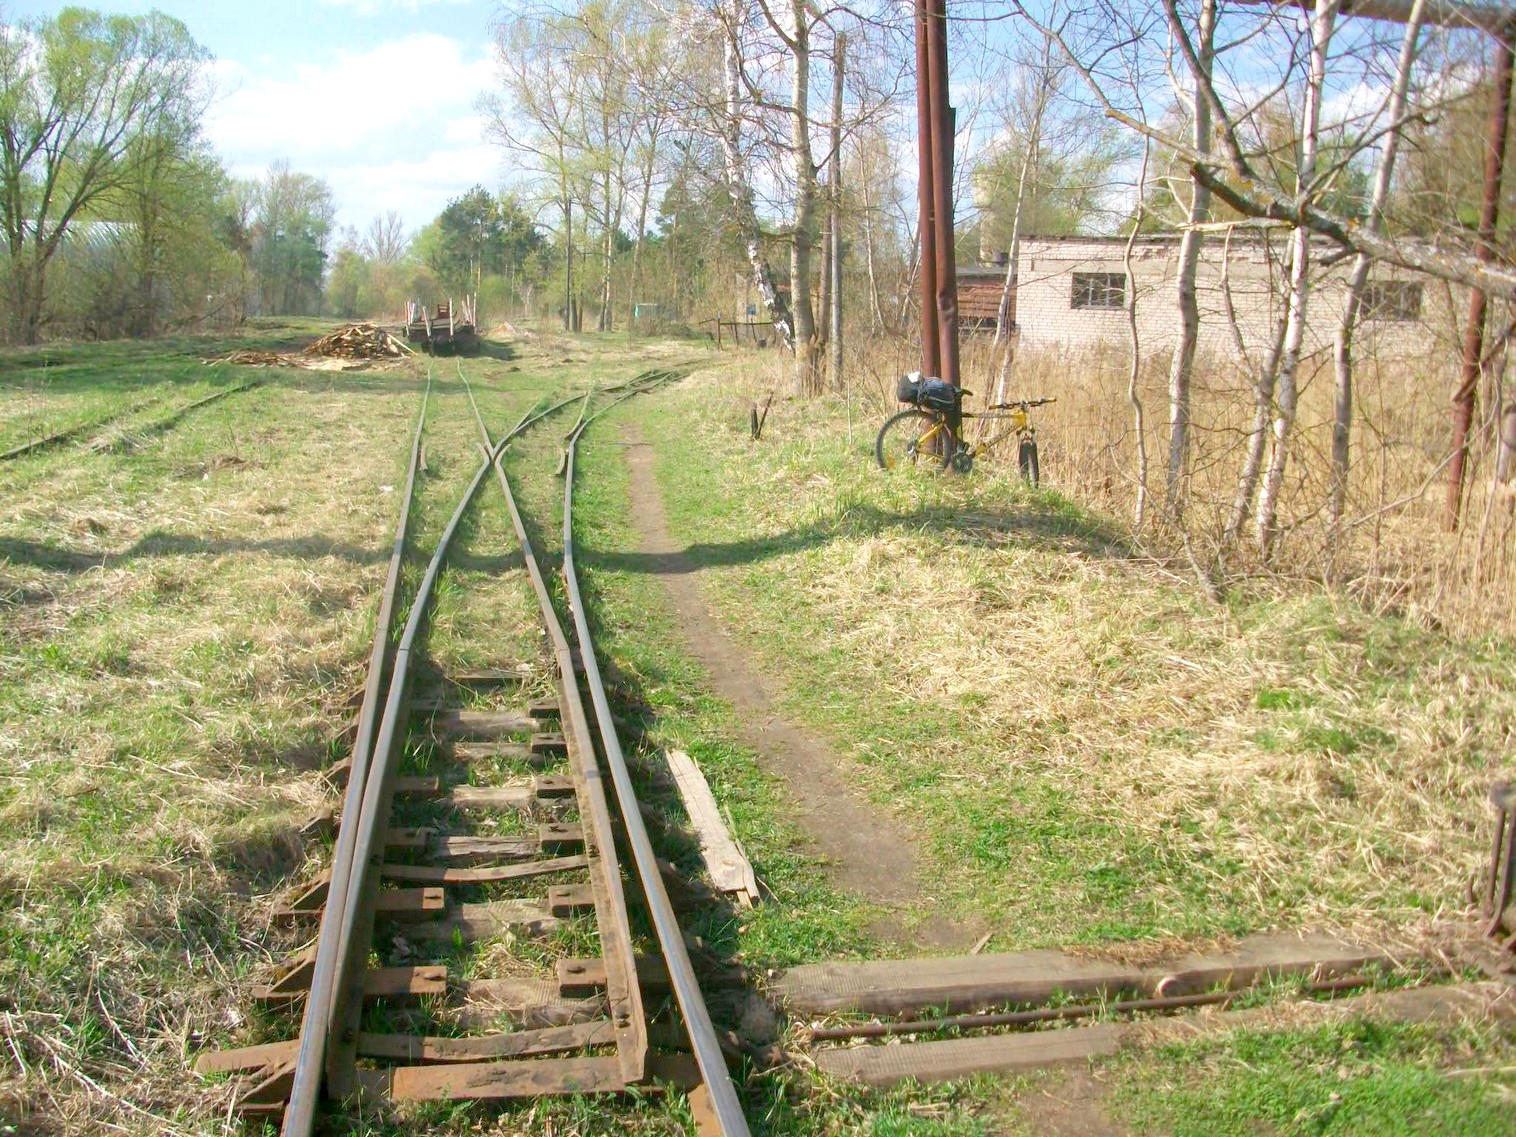 Узкоколейная железная дорога Васильевского предприятия промышленного железнодорожного транспорта  — фотографии, сделанные в 2014 году (часть 2)